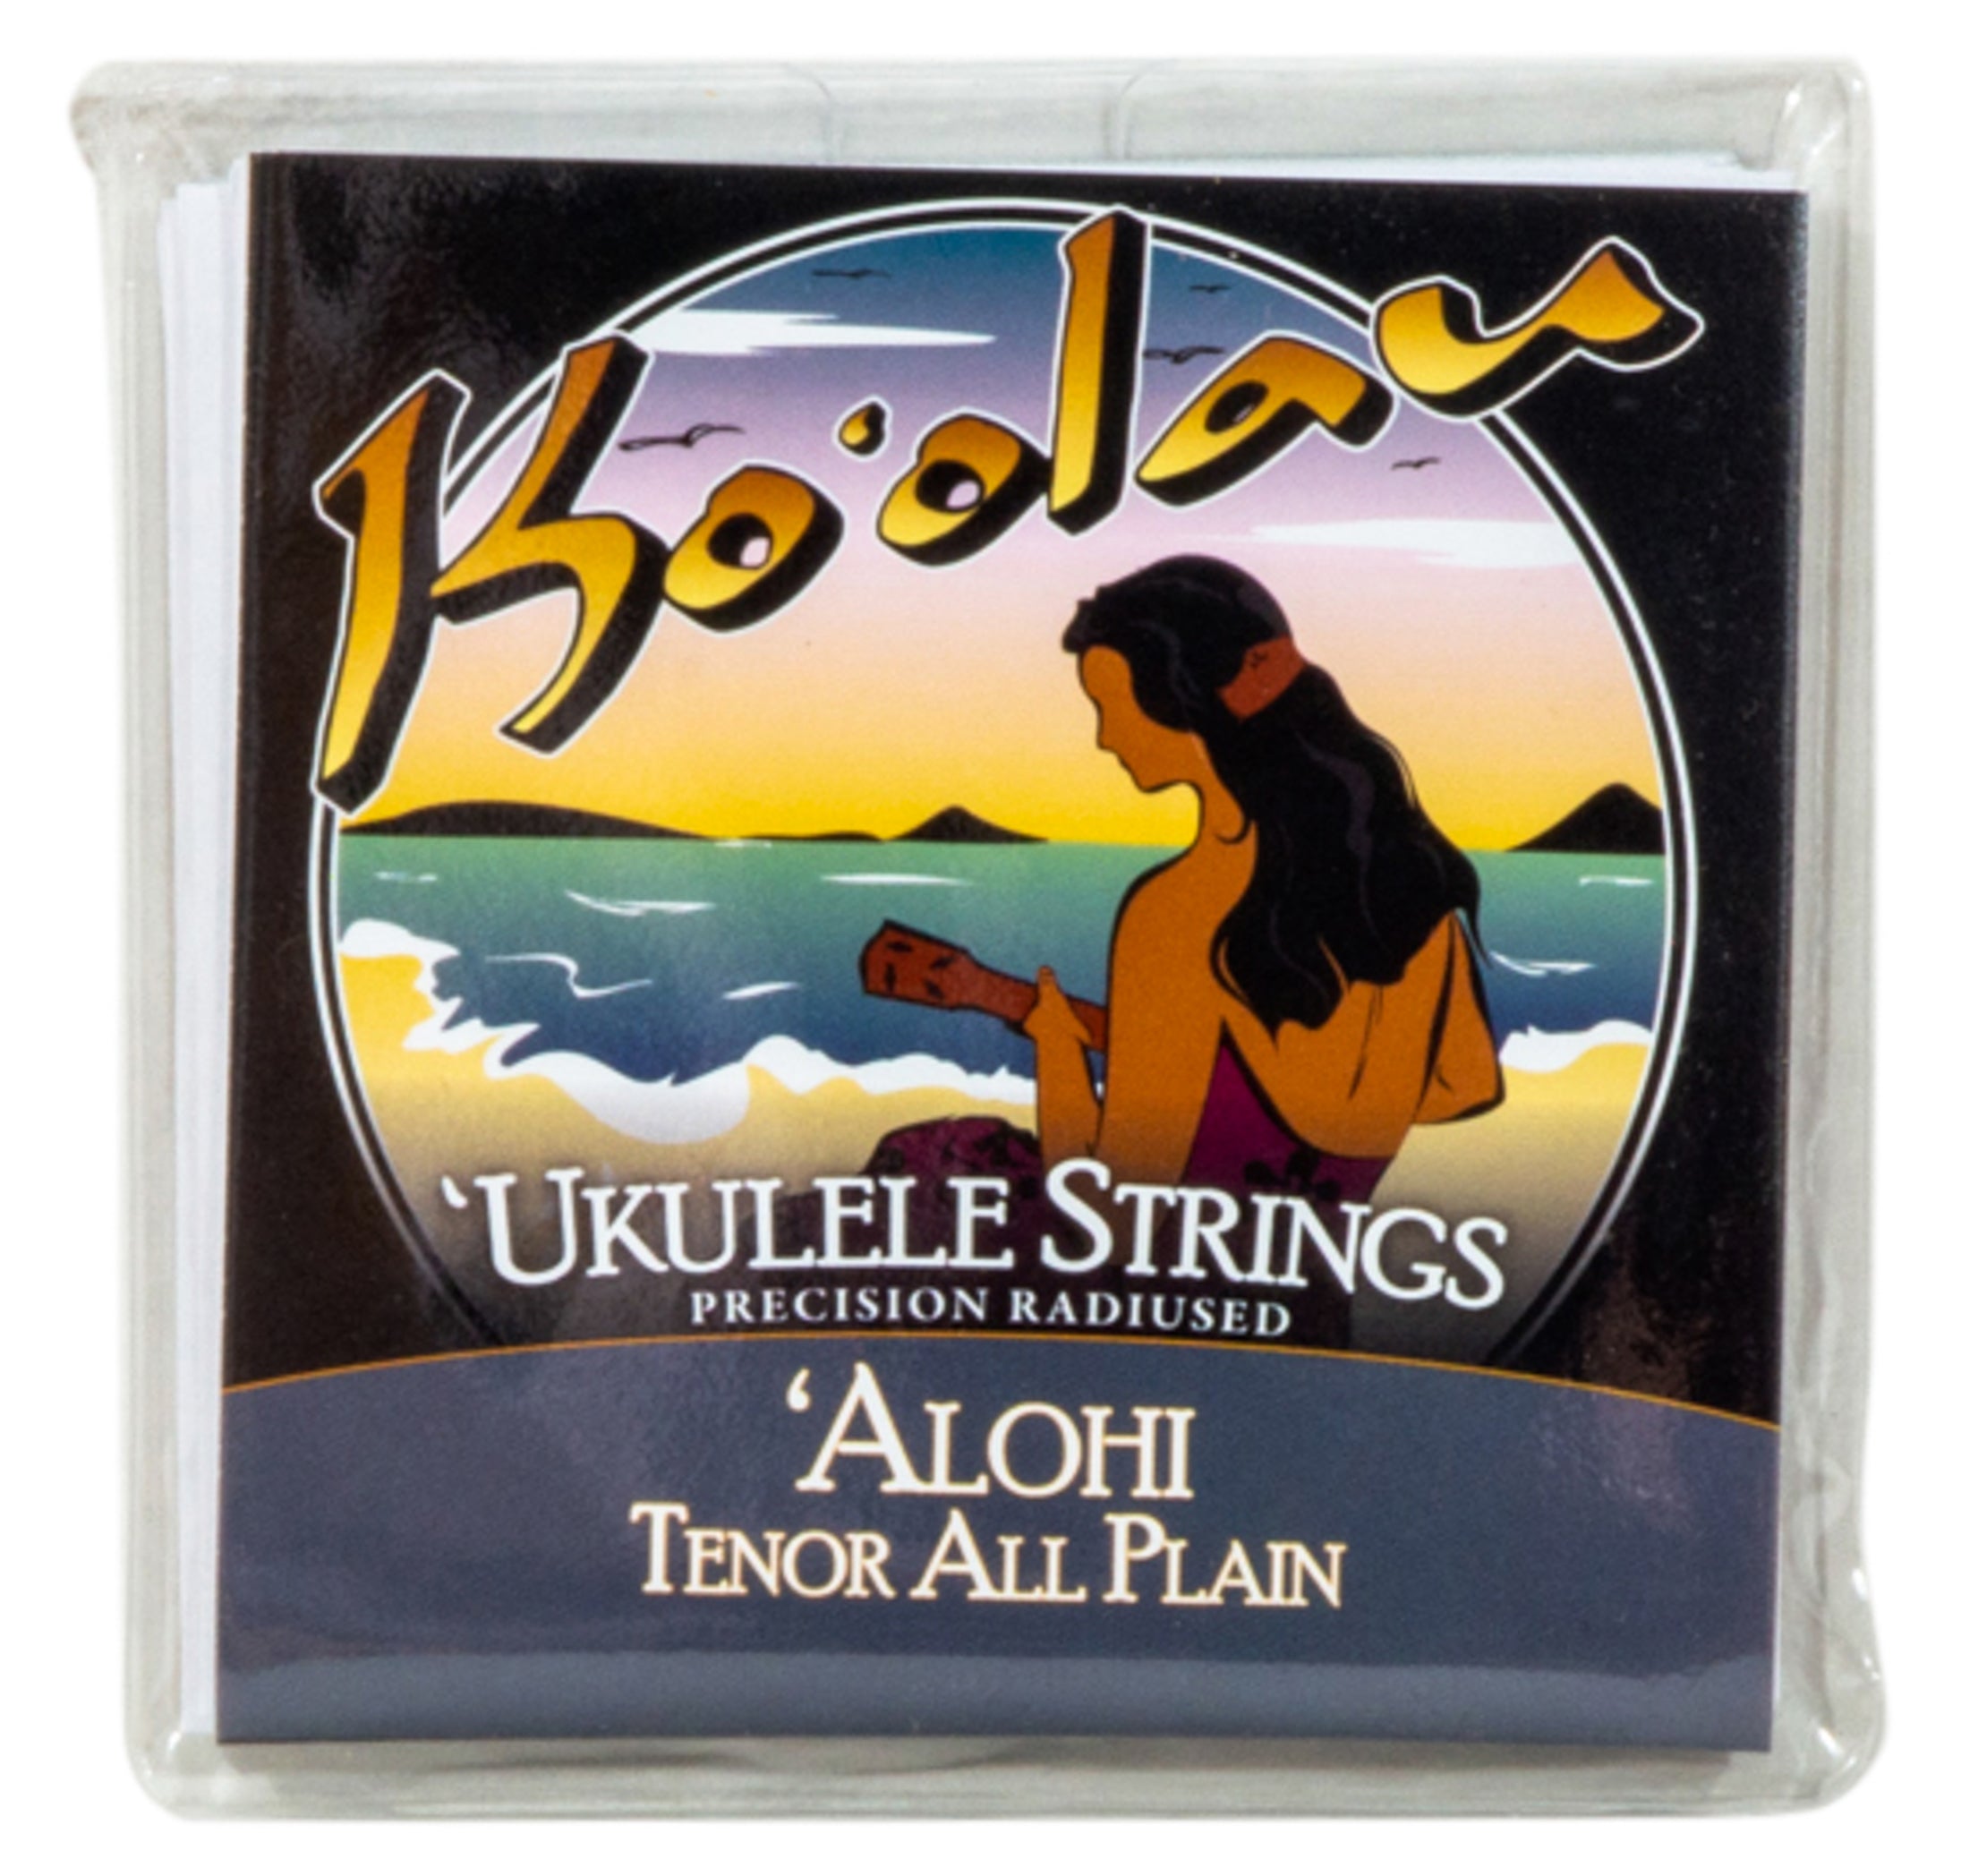 Ko'olau 'Alohi Tenor All Plain String Set